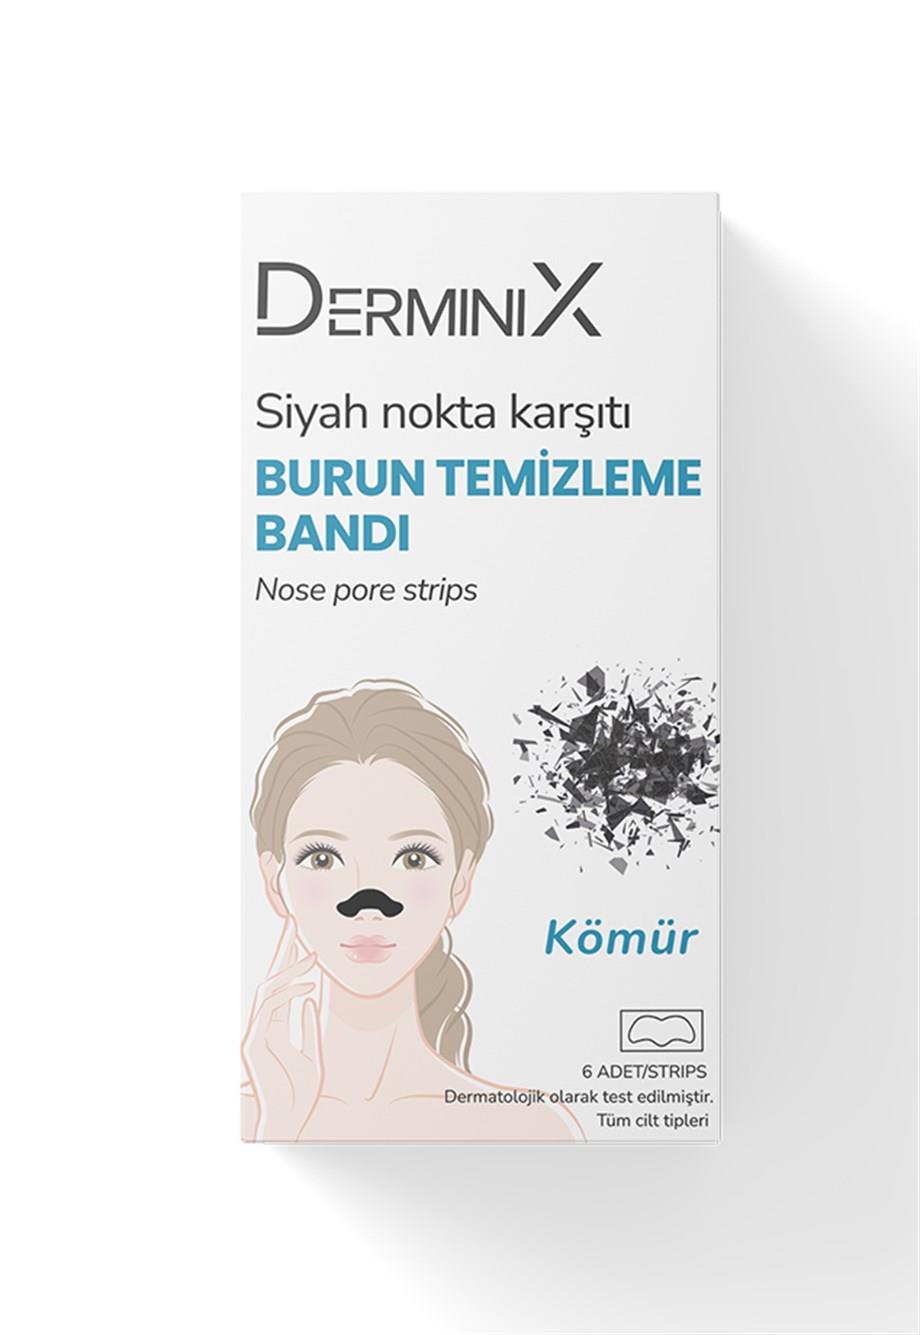 Derminix soyulabilir Siyah Maske / Kömür Burun Bandı / Kolajen-C Kağıt Maske